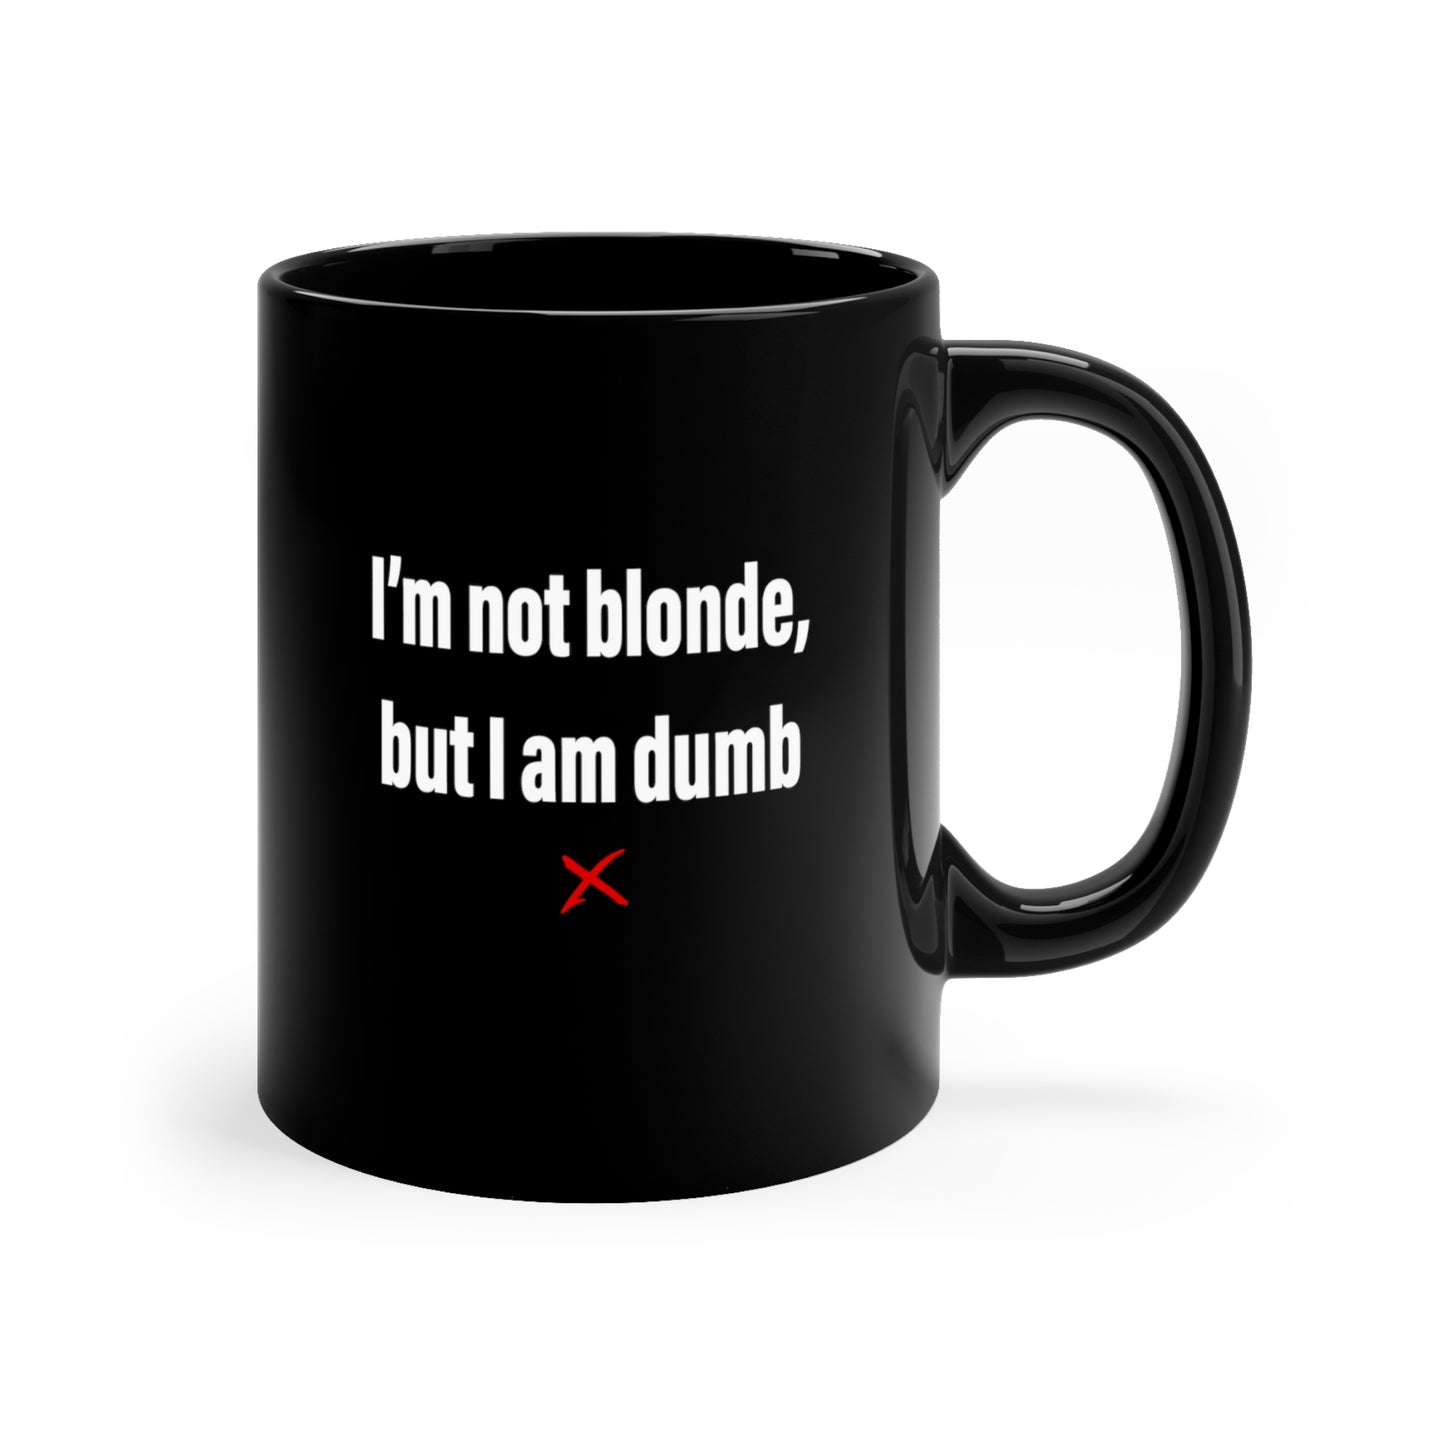 I'm not blonde, but I am dumb - Mug